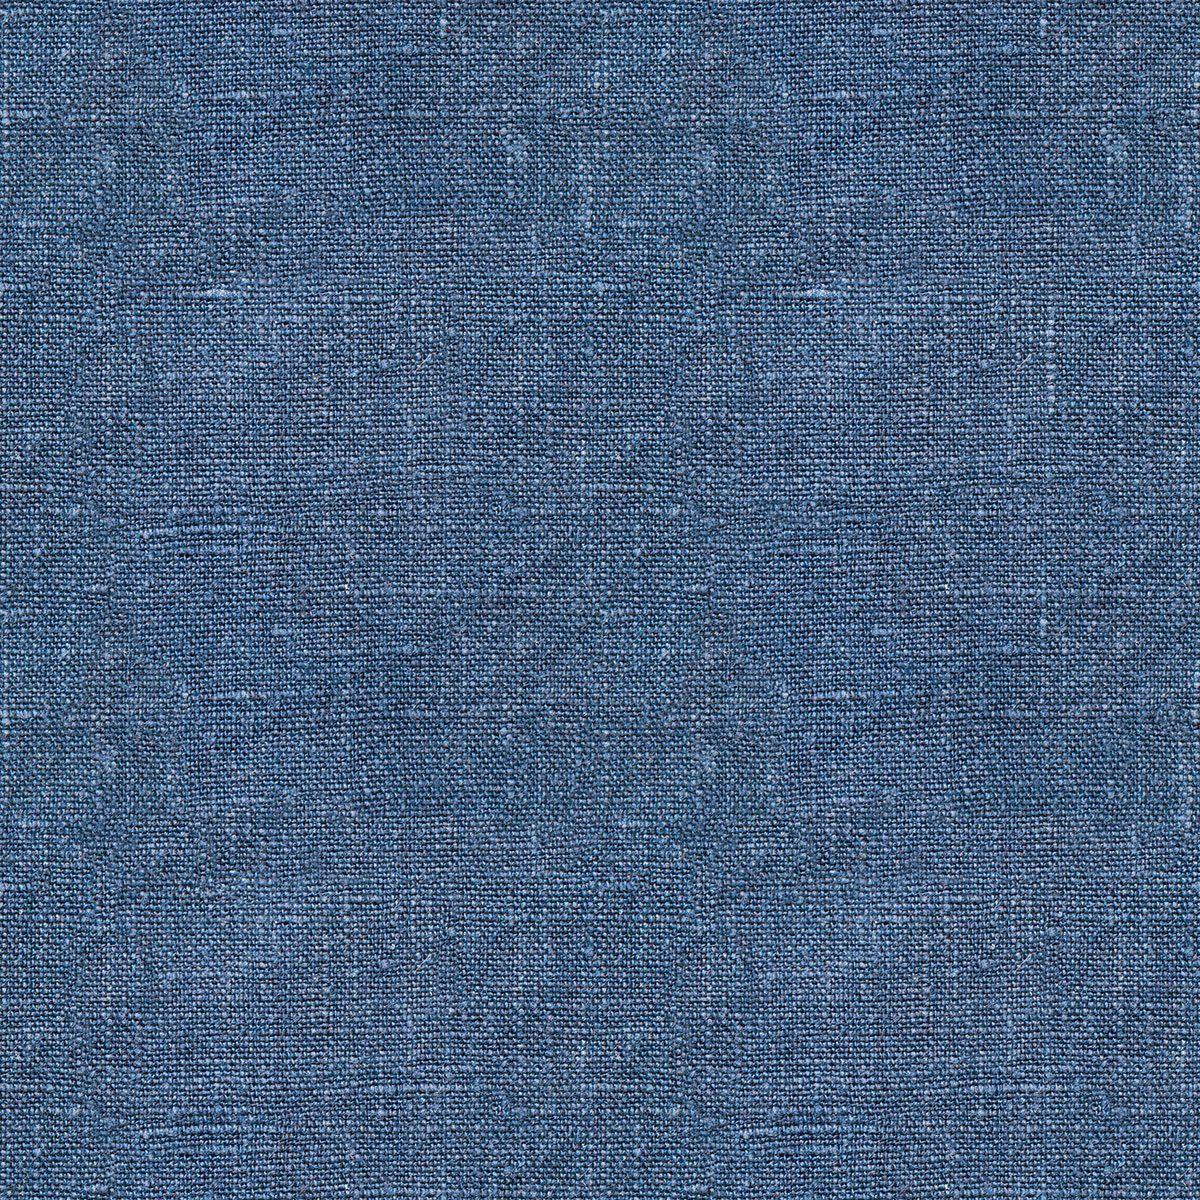 Top 91+ hình ảnh fabric texture background - thpthoangvanthu.edu.vn